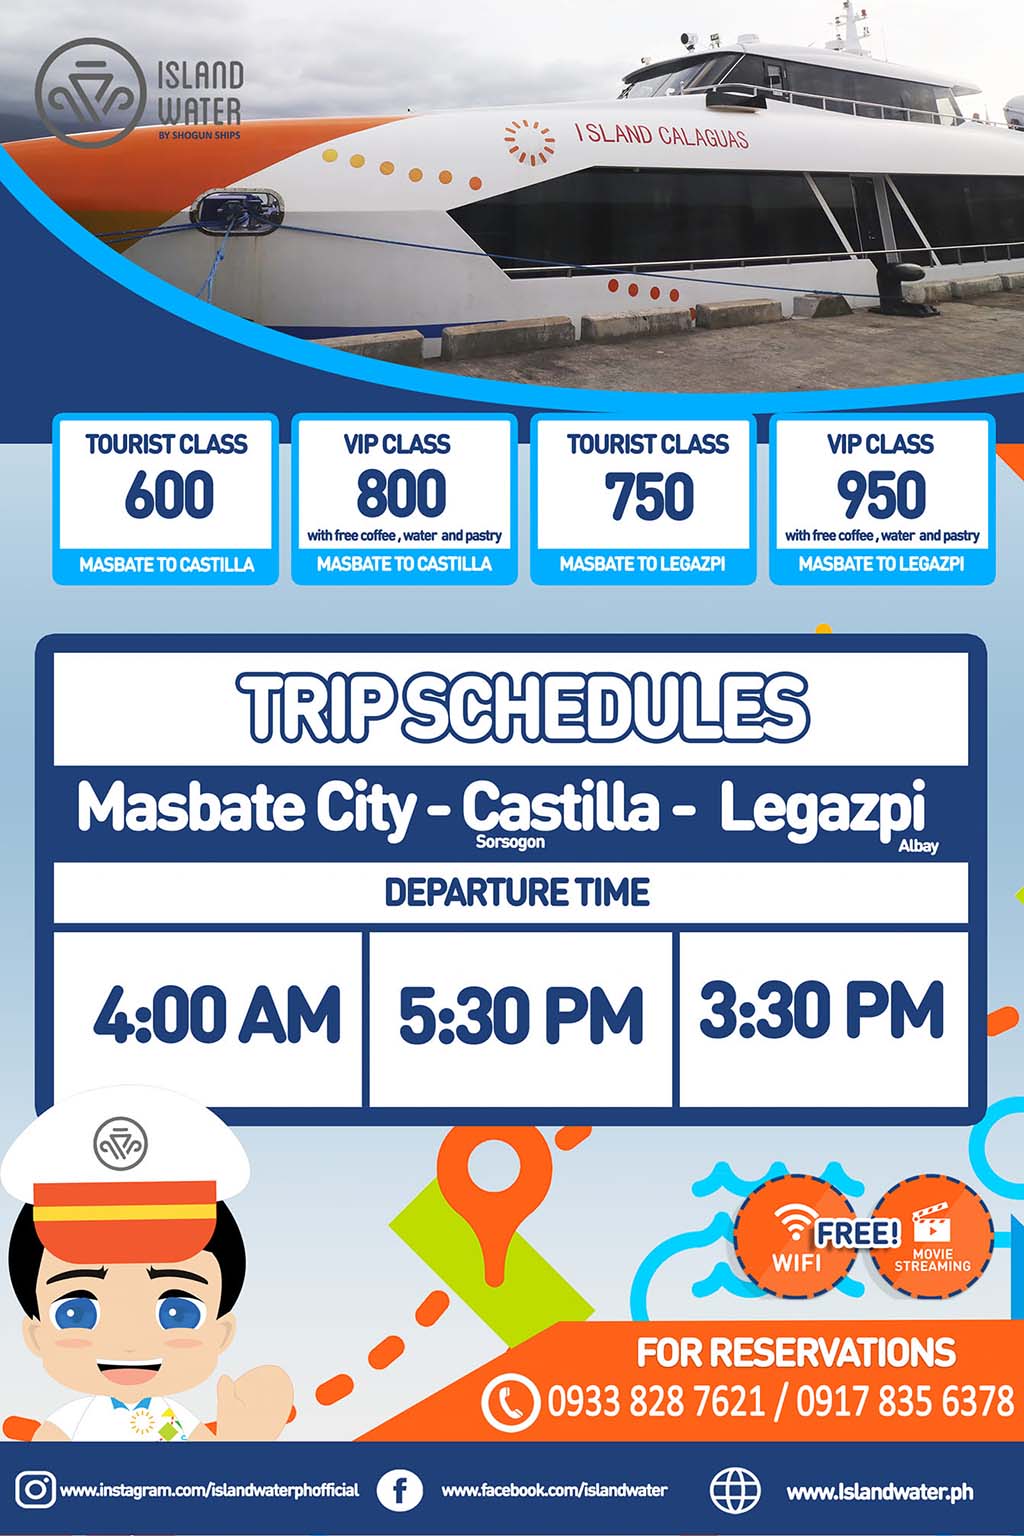 Masbate-Castilla-Legazpi Schedule and Fare